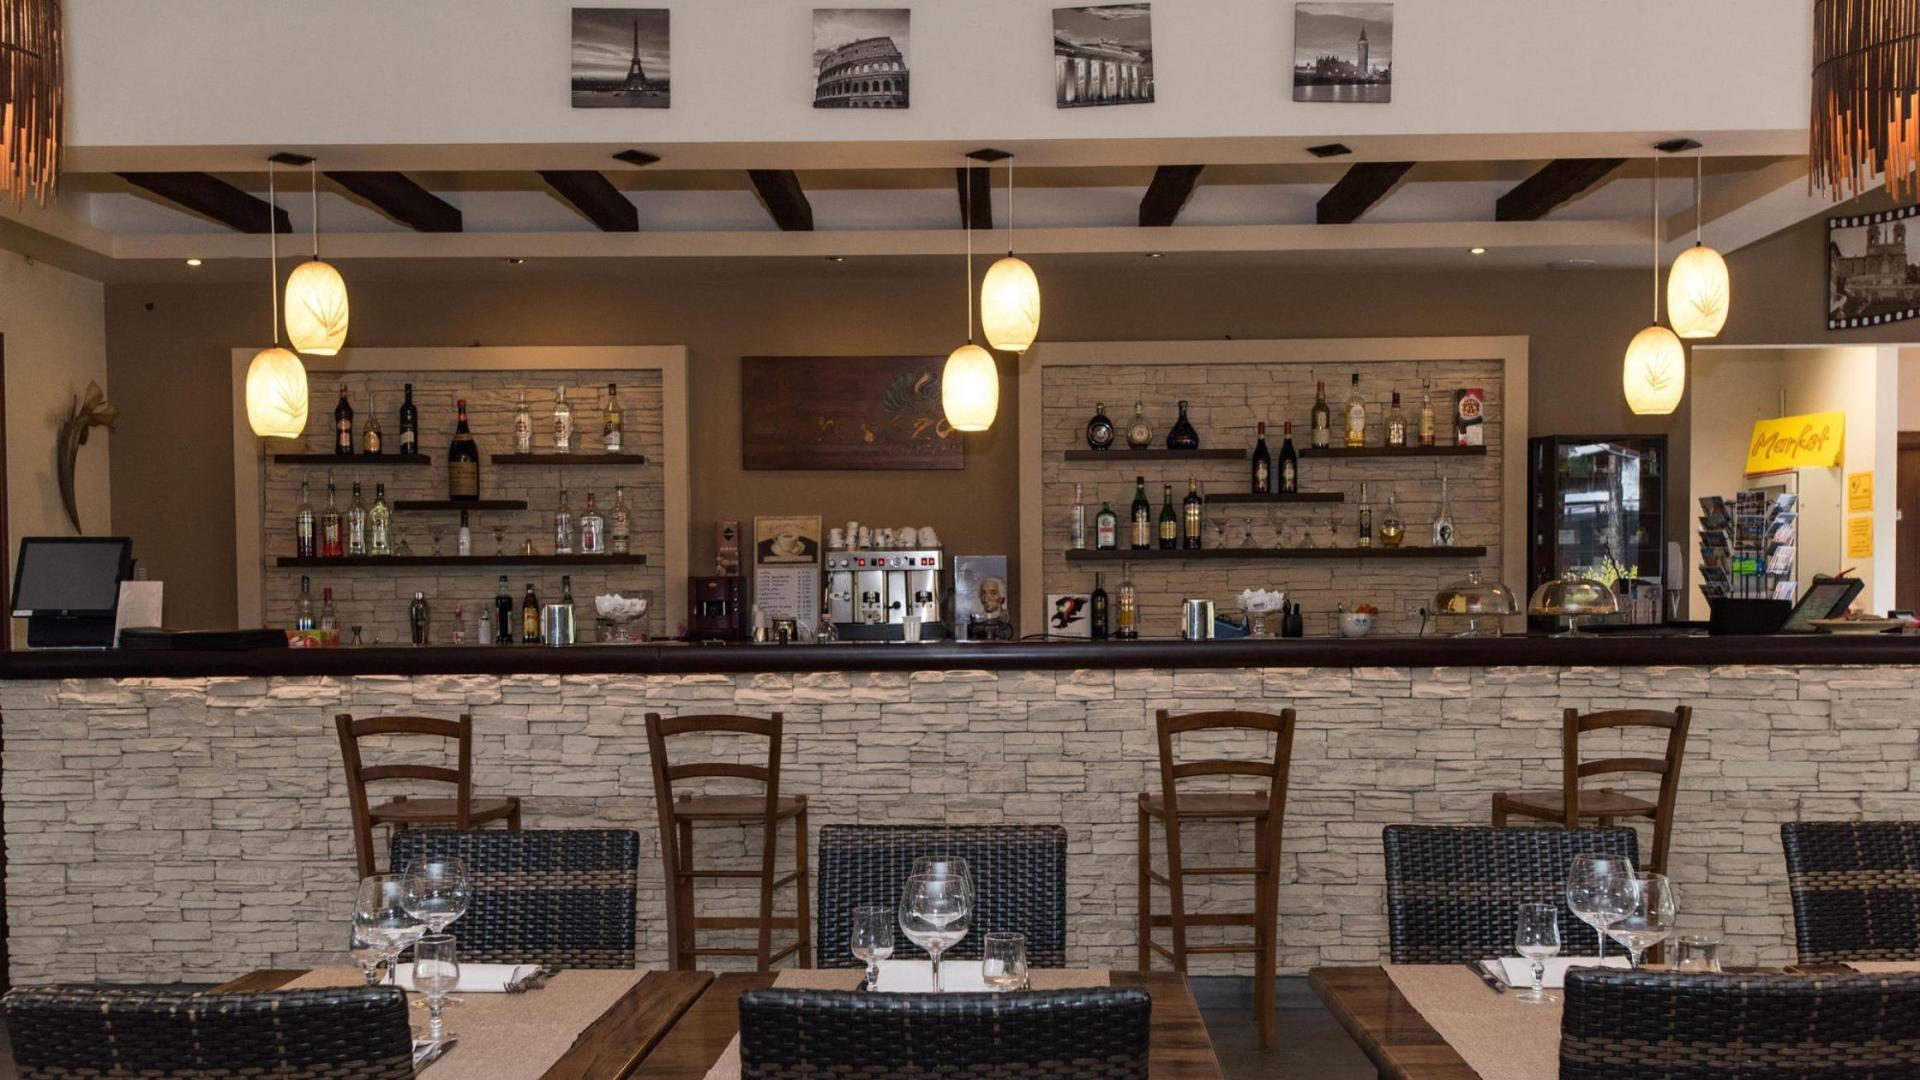 Gezellige restaurantbar met houten decor, flessenplanken en elegante tafeldekking.